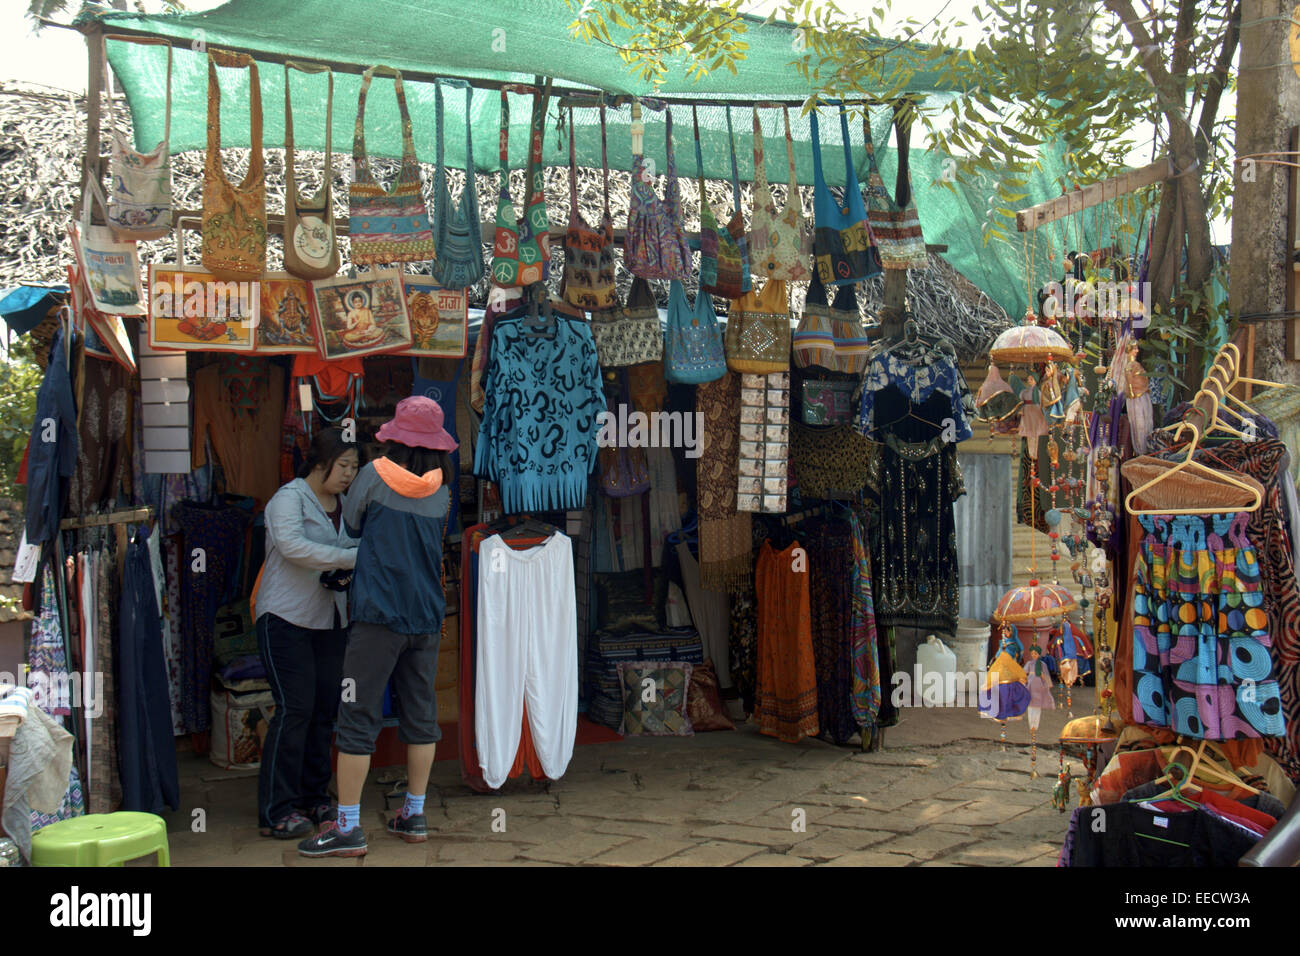 Touristische Kontrolle der Straßenhändler, die indische Baumwolle Kleidung und Waren, varkala, Papanasam Beach, Kerala, Indien, pradeep Subramanian Stockfoto